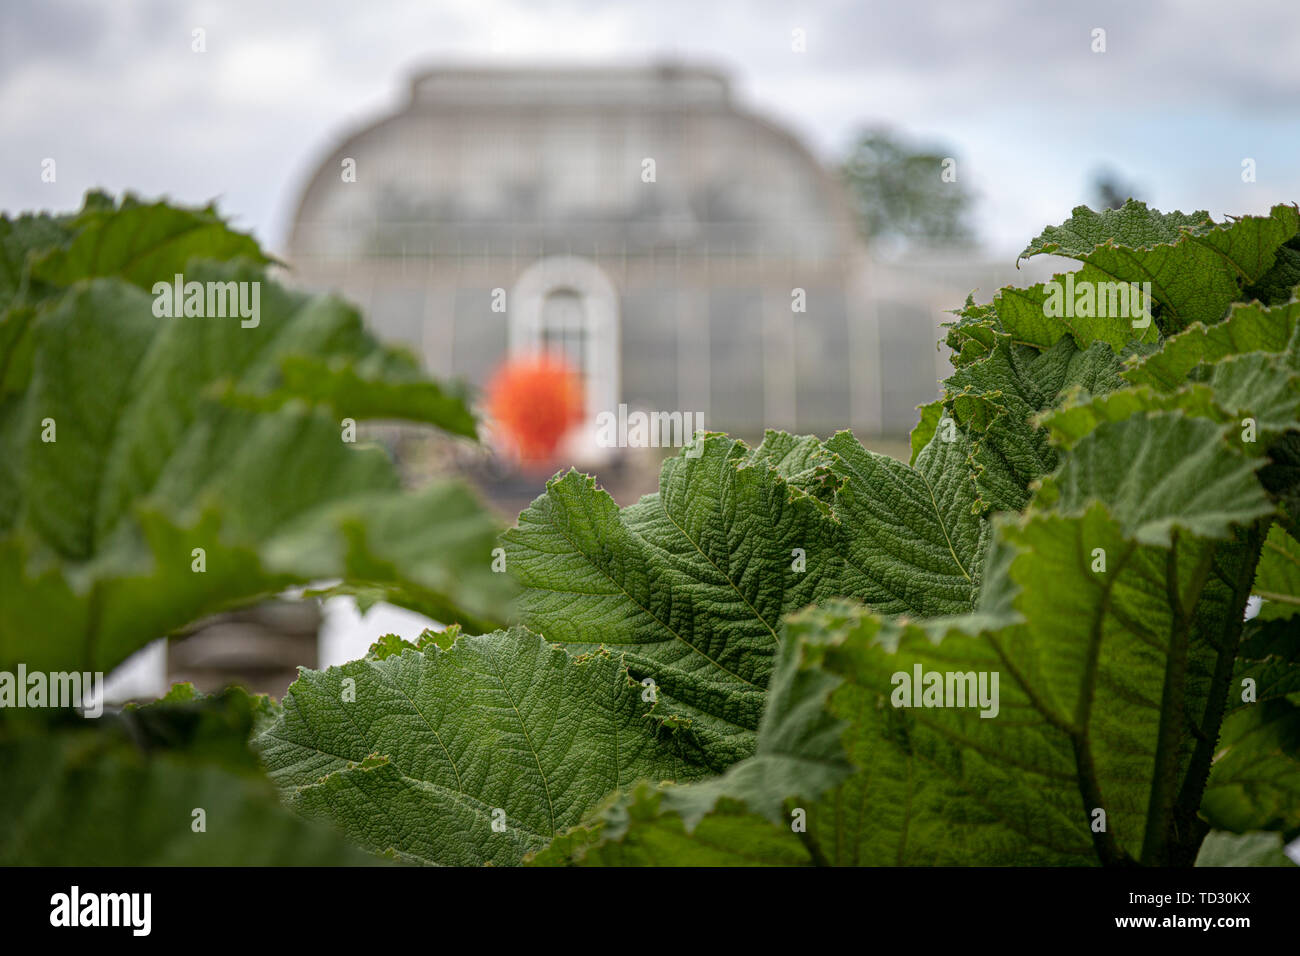 La vista de la Casa de las palmeras y el sol del verano escultura en vidrio por Dale Chihuly vistos a través de las hojas de ruibarbo gigante junto al agua. Foto de stock